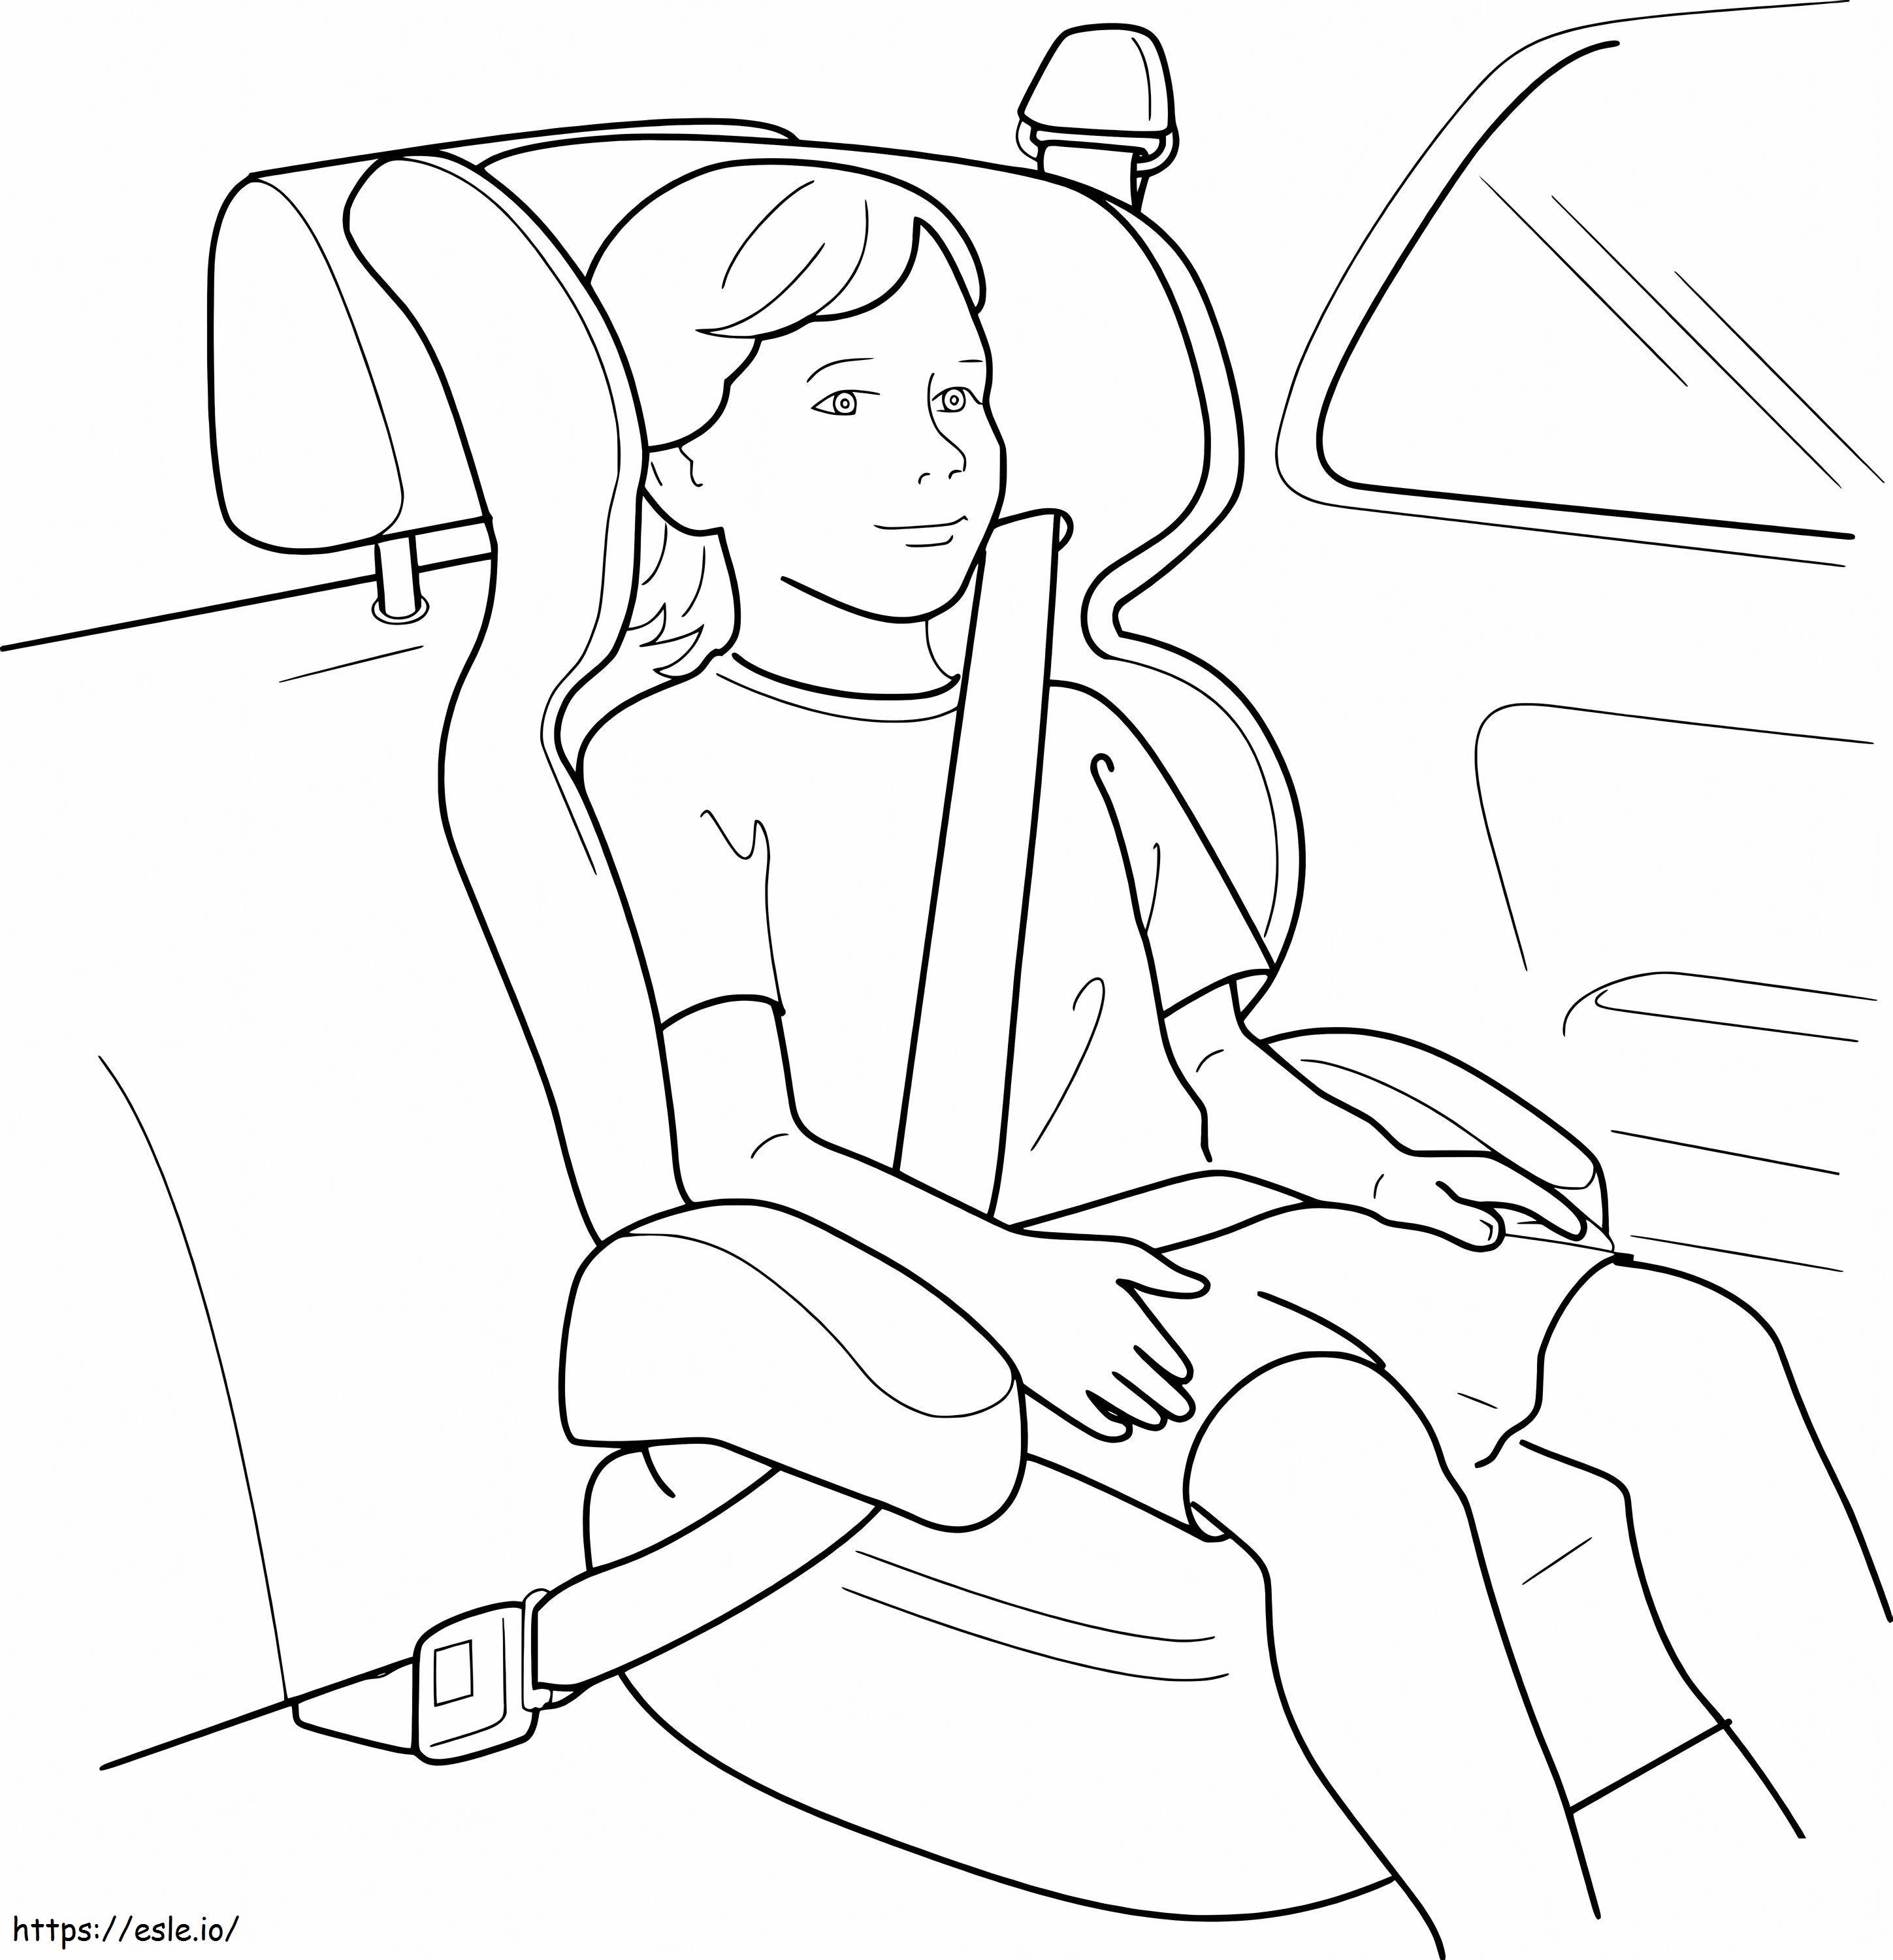 Abróchese el cinturón de seguridad para la seguridad del automóvil infantil para colorear